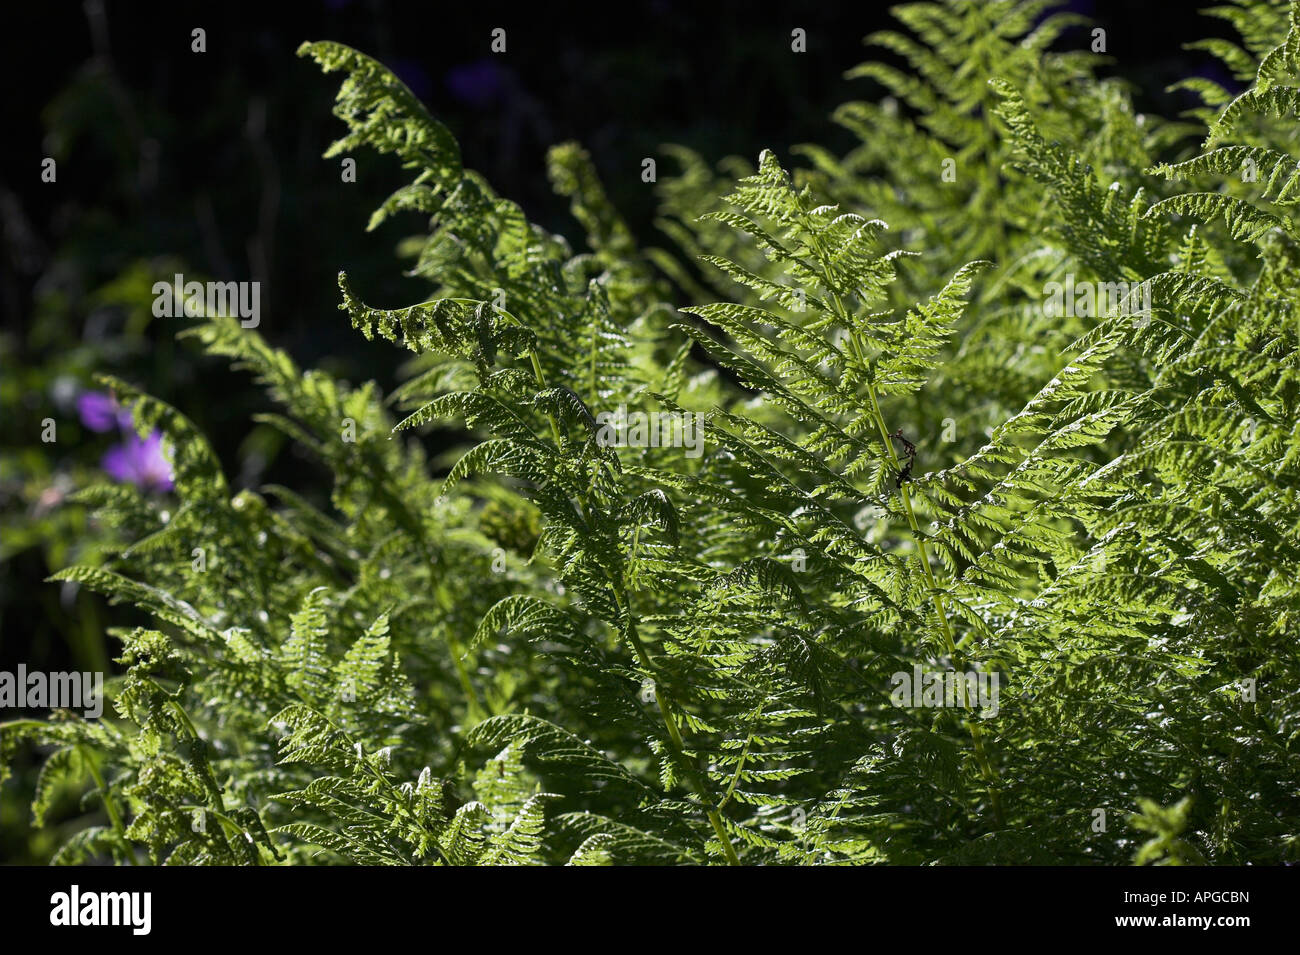 Athyrium filix femina 'Plumosum' Lady fern Stock Photo